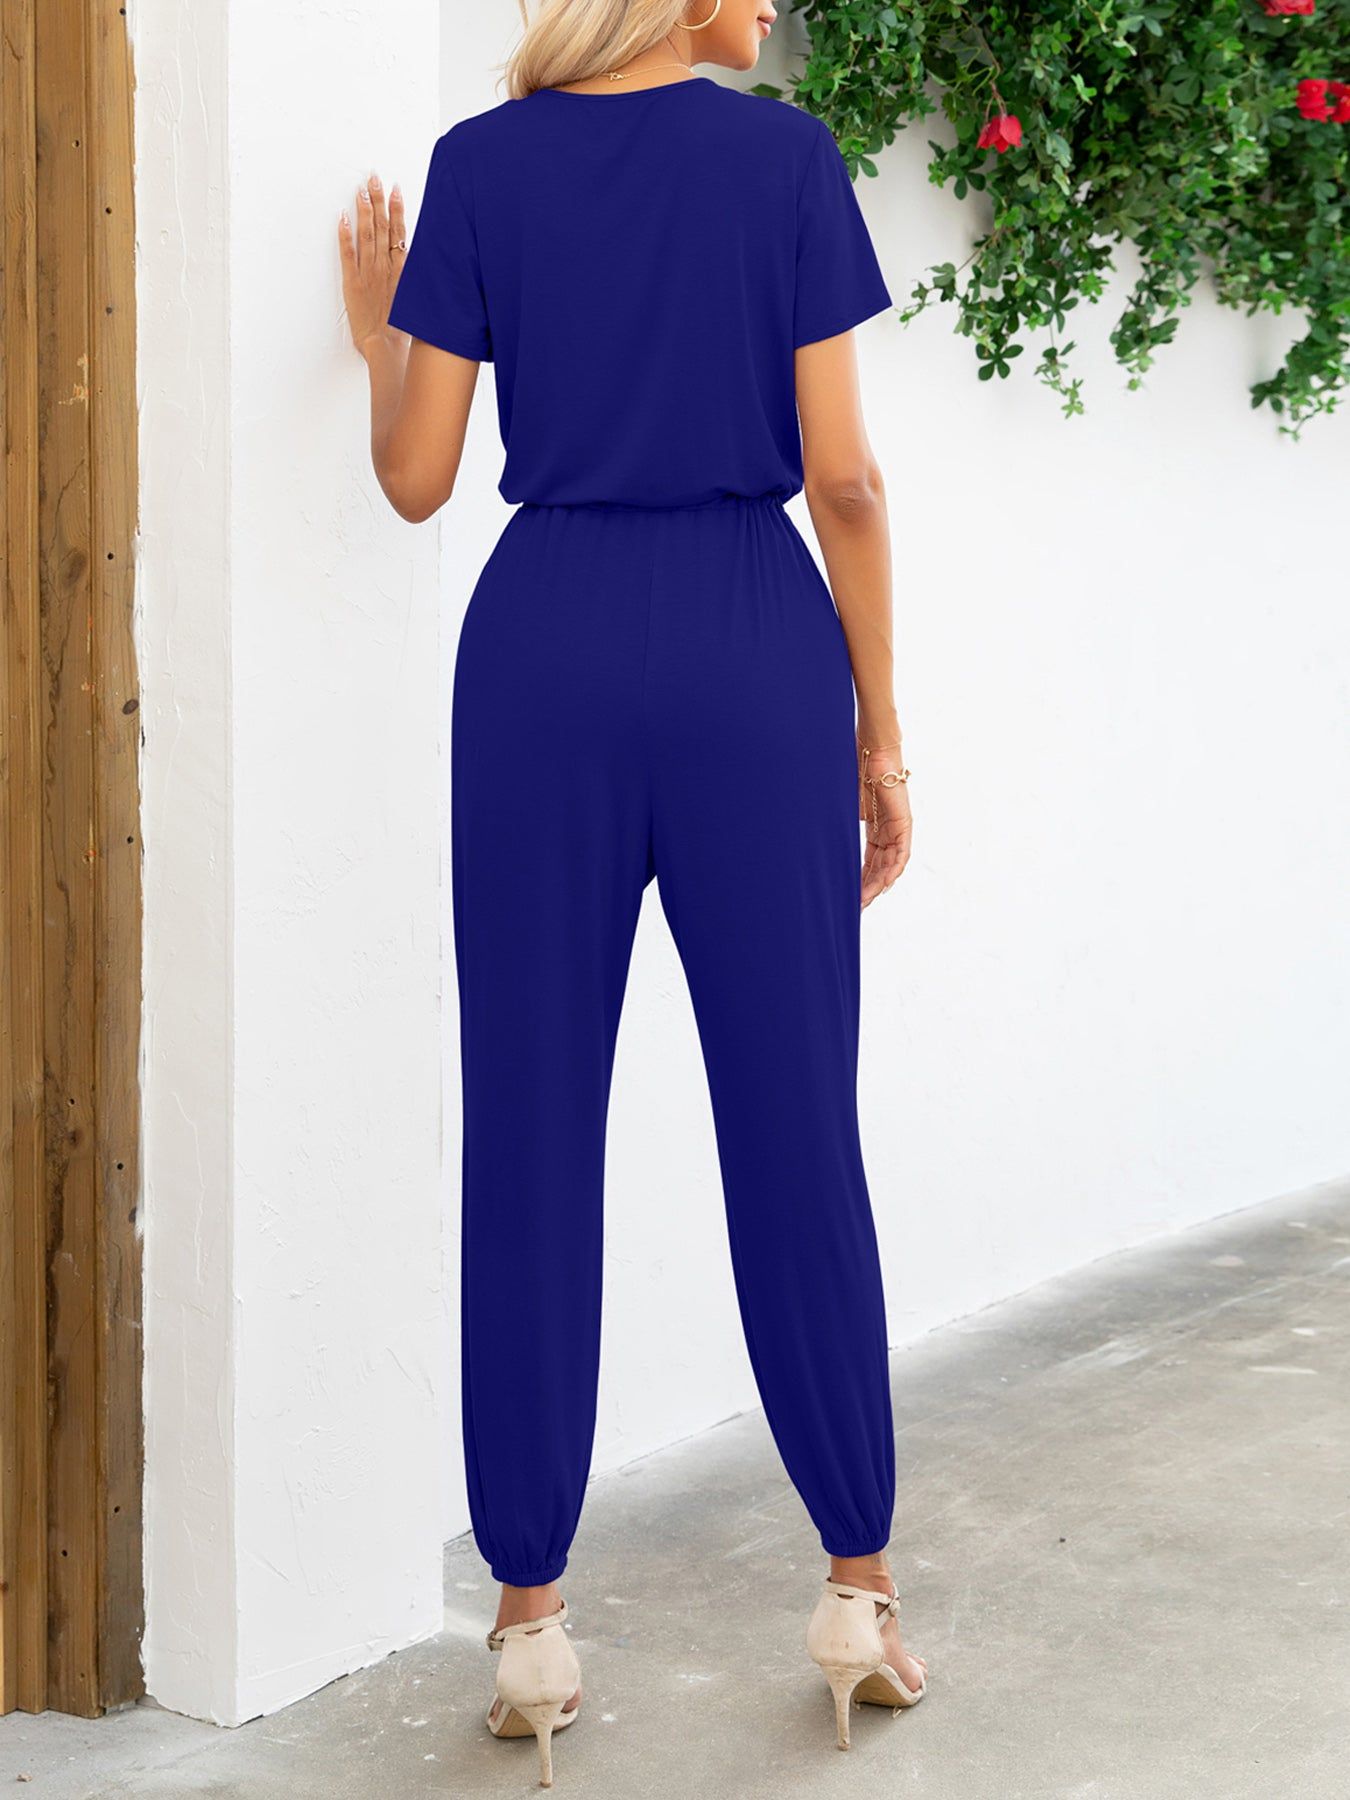 Short Sleeve V-Neck Jumpsuit with Pockets.